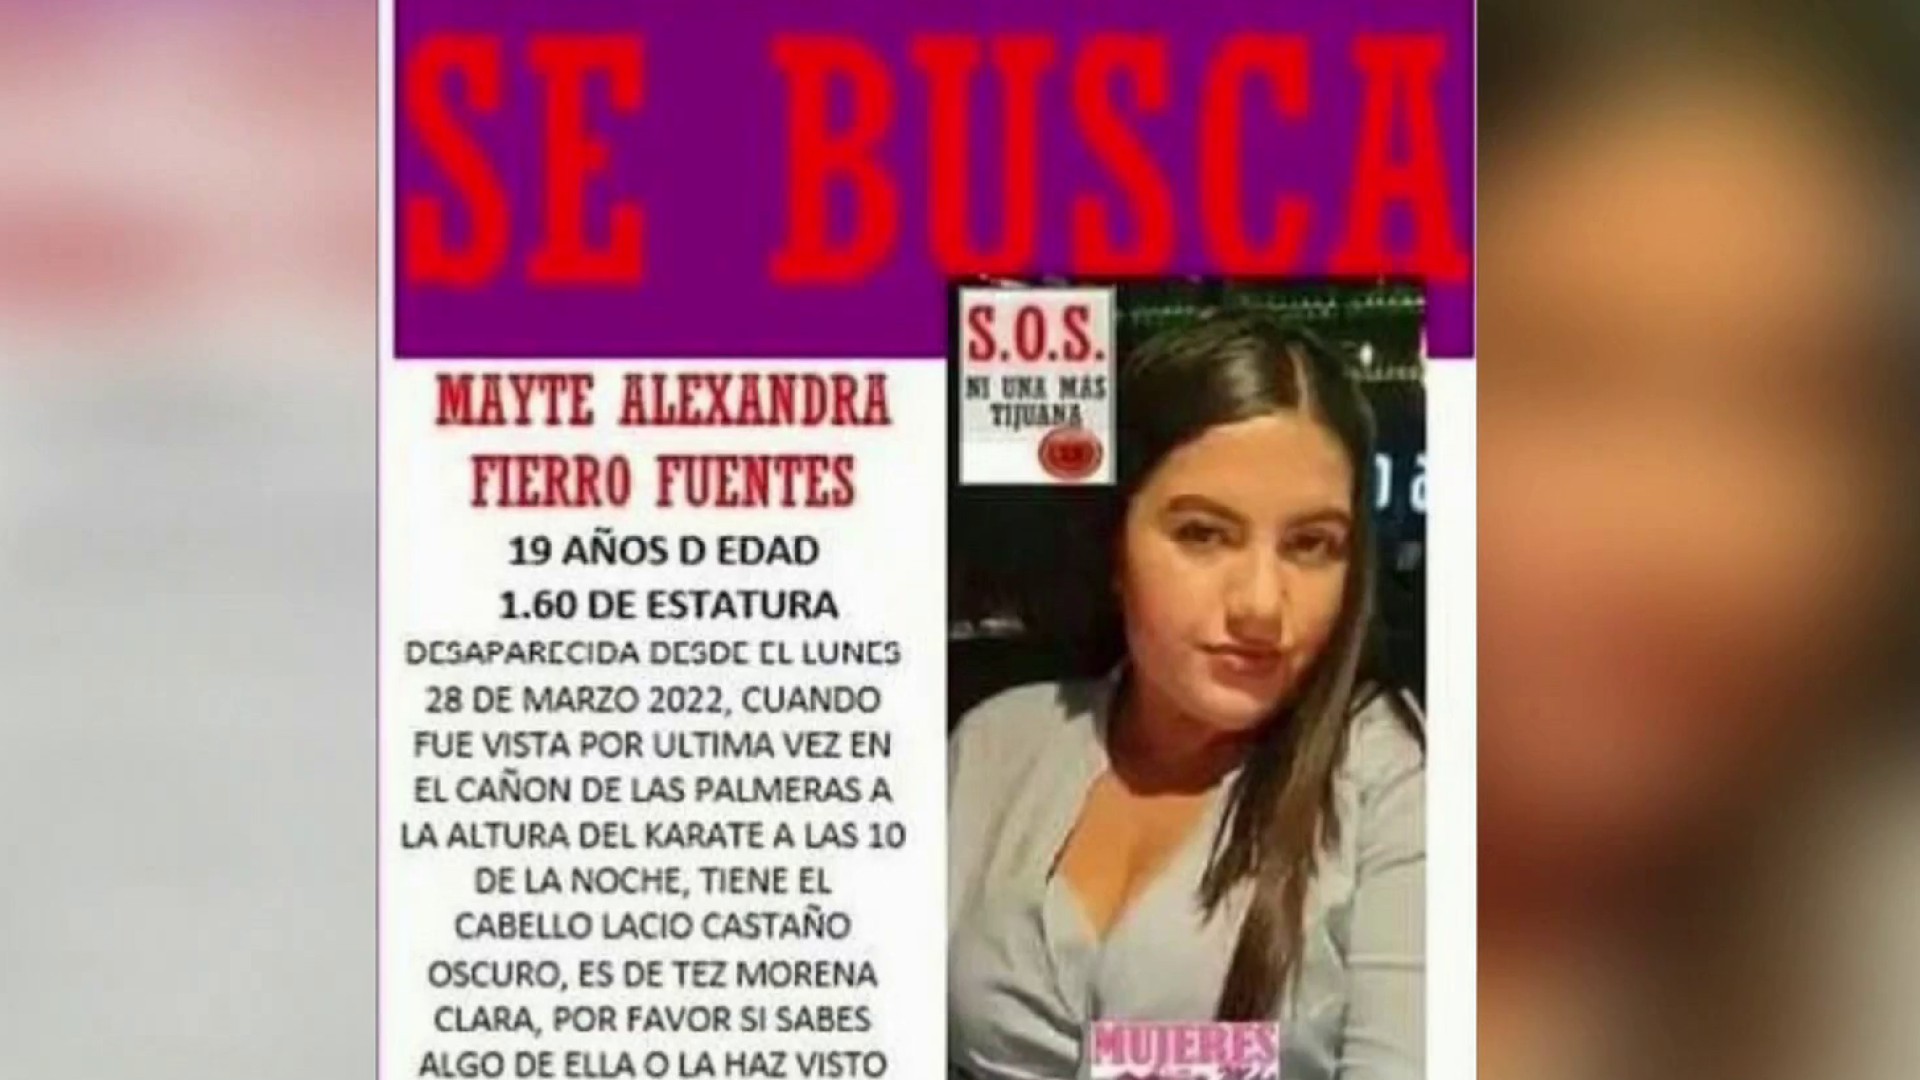 Mayte Alexandra Fierro Fuentes Archivos - Unión BC Noticias